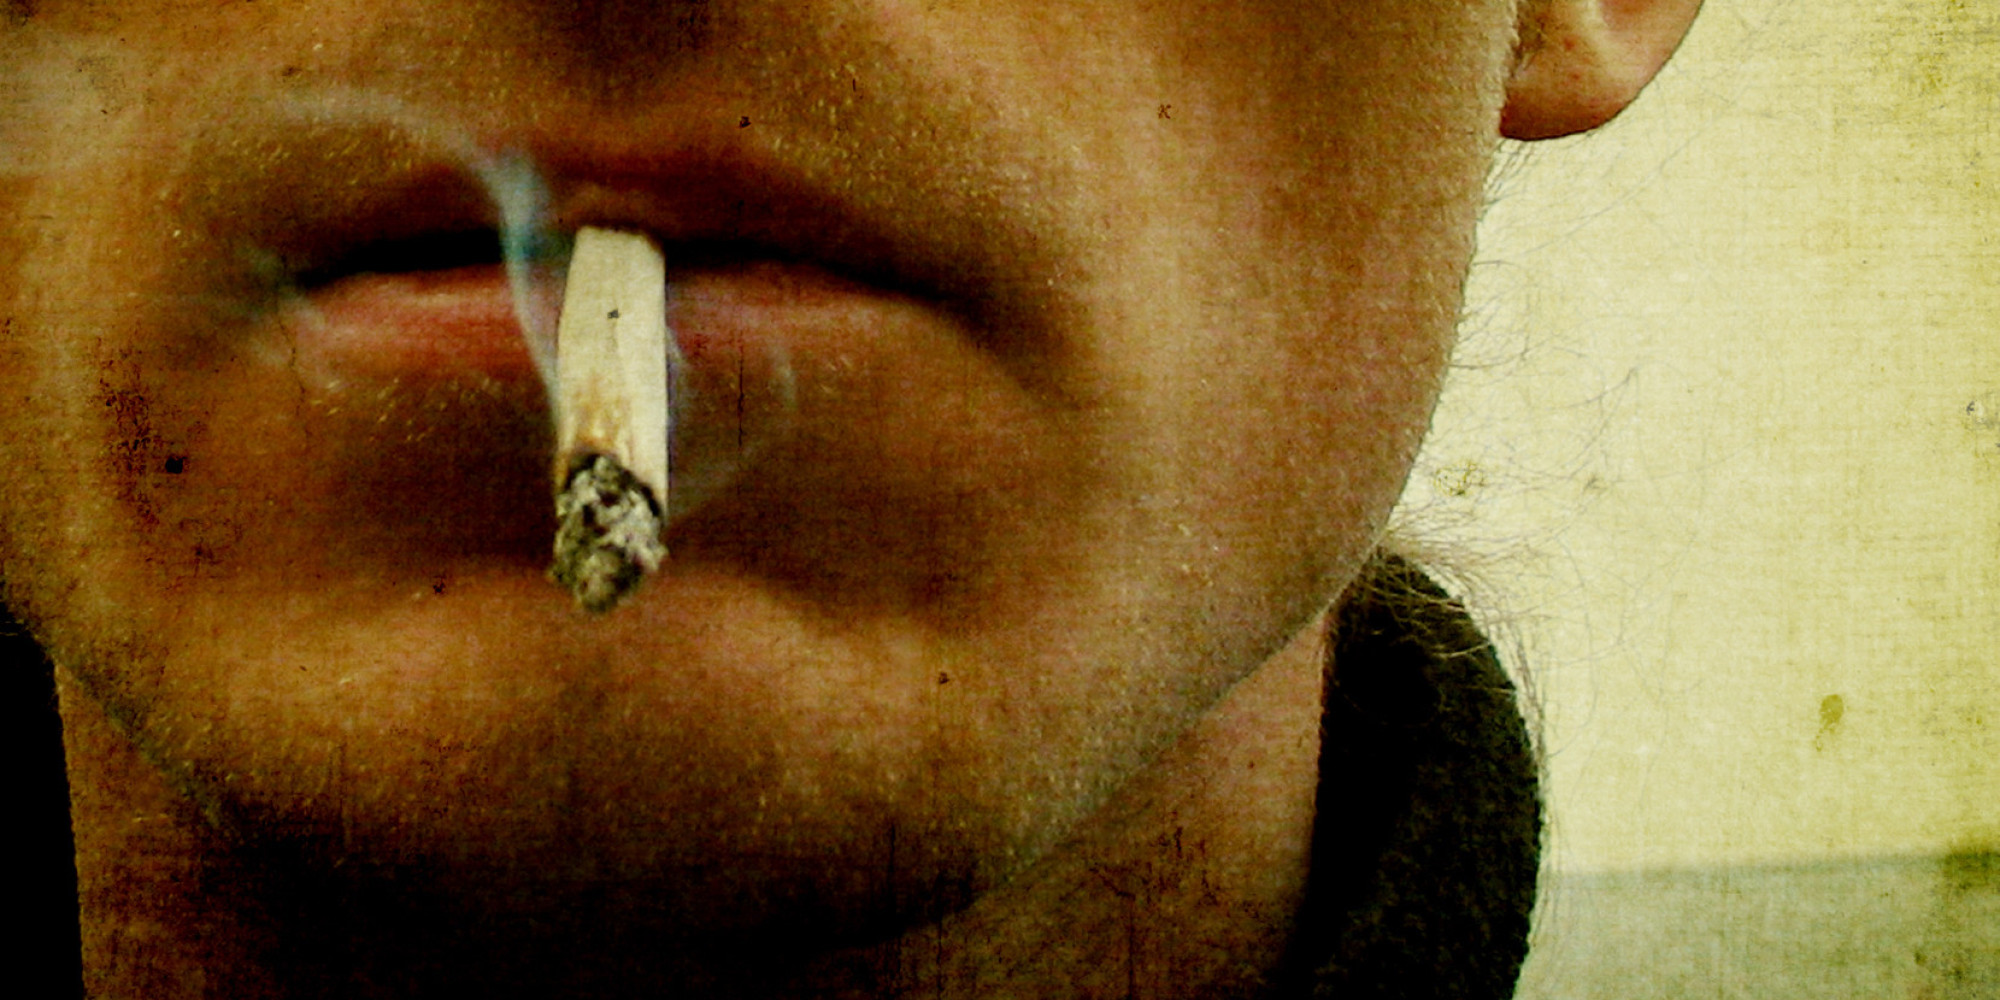 Сигарета во рту. Курение фото.